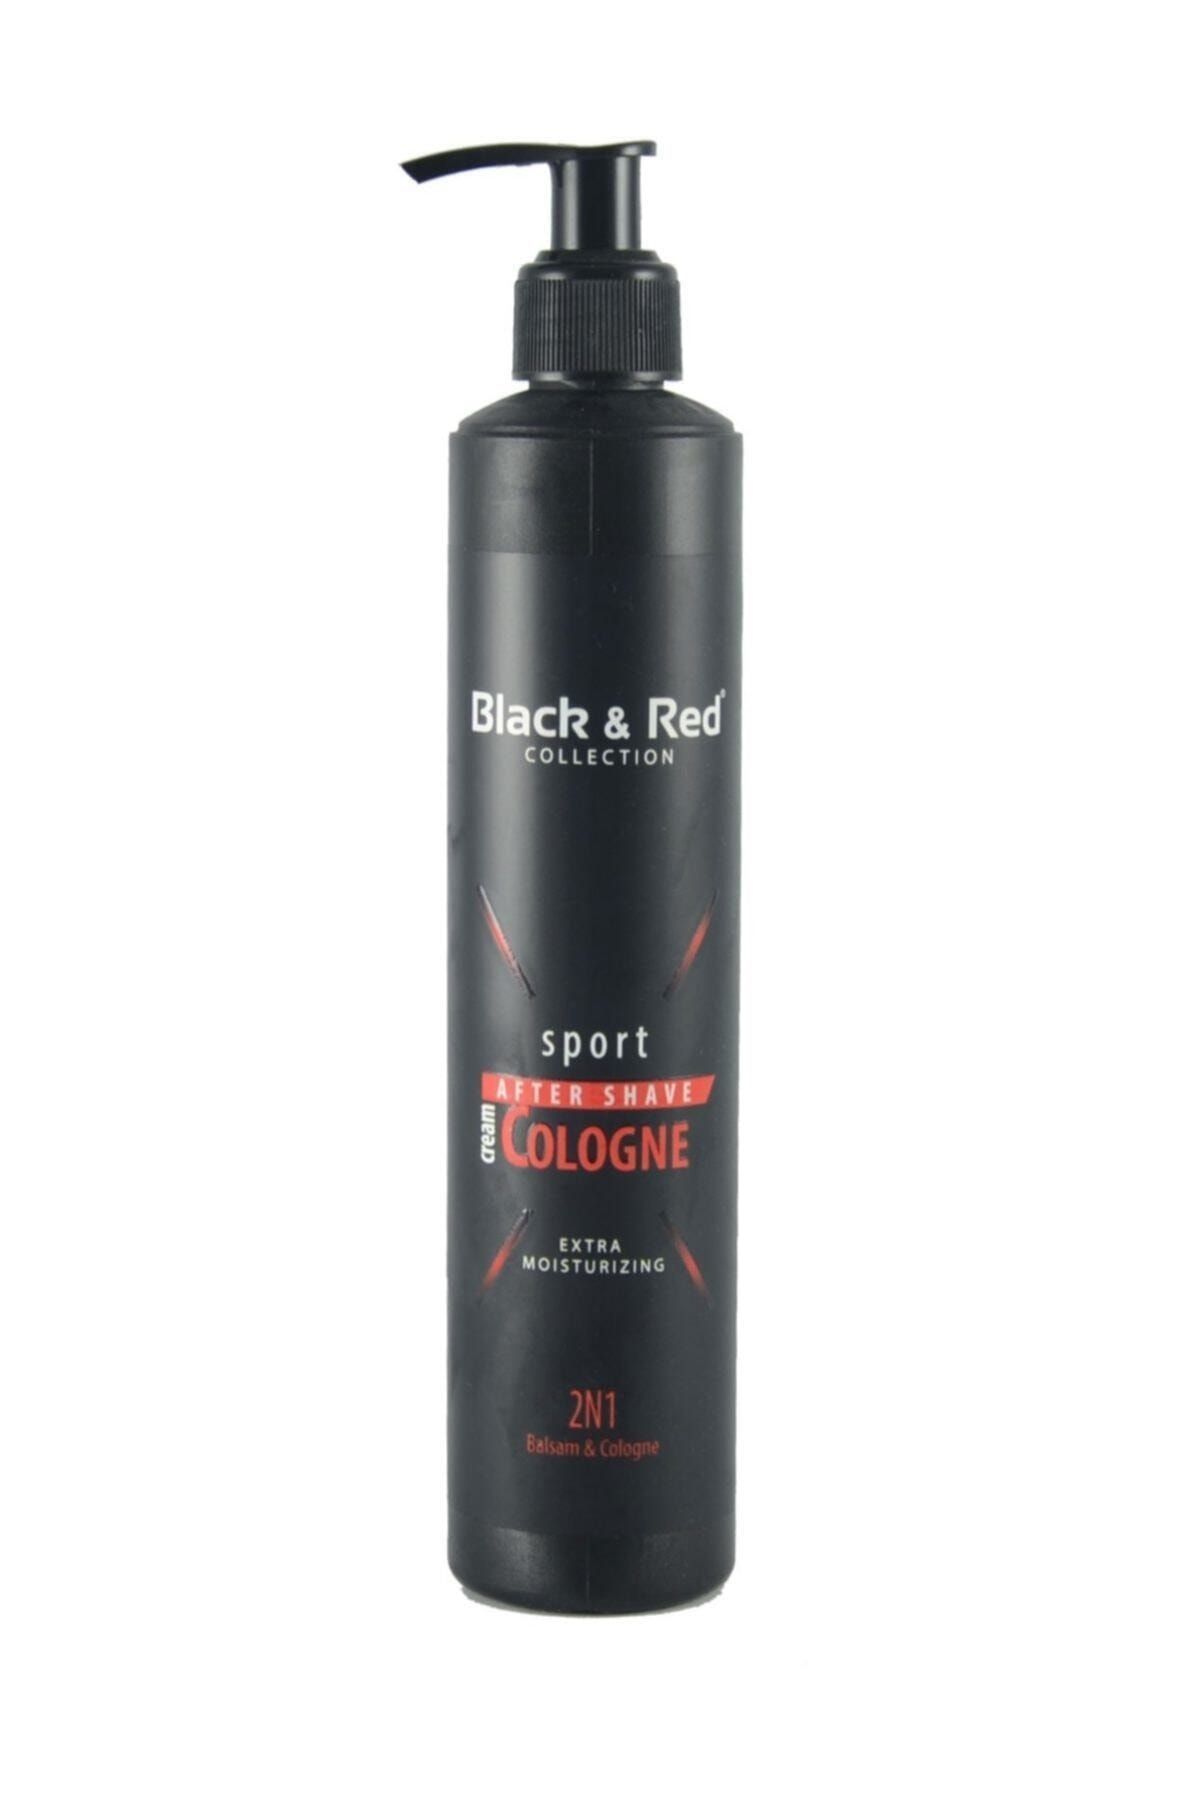 BLACK & Red Sport Traş Sonrası Krem Kolonya 300 ml